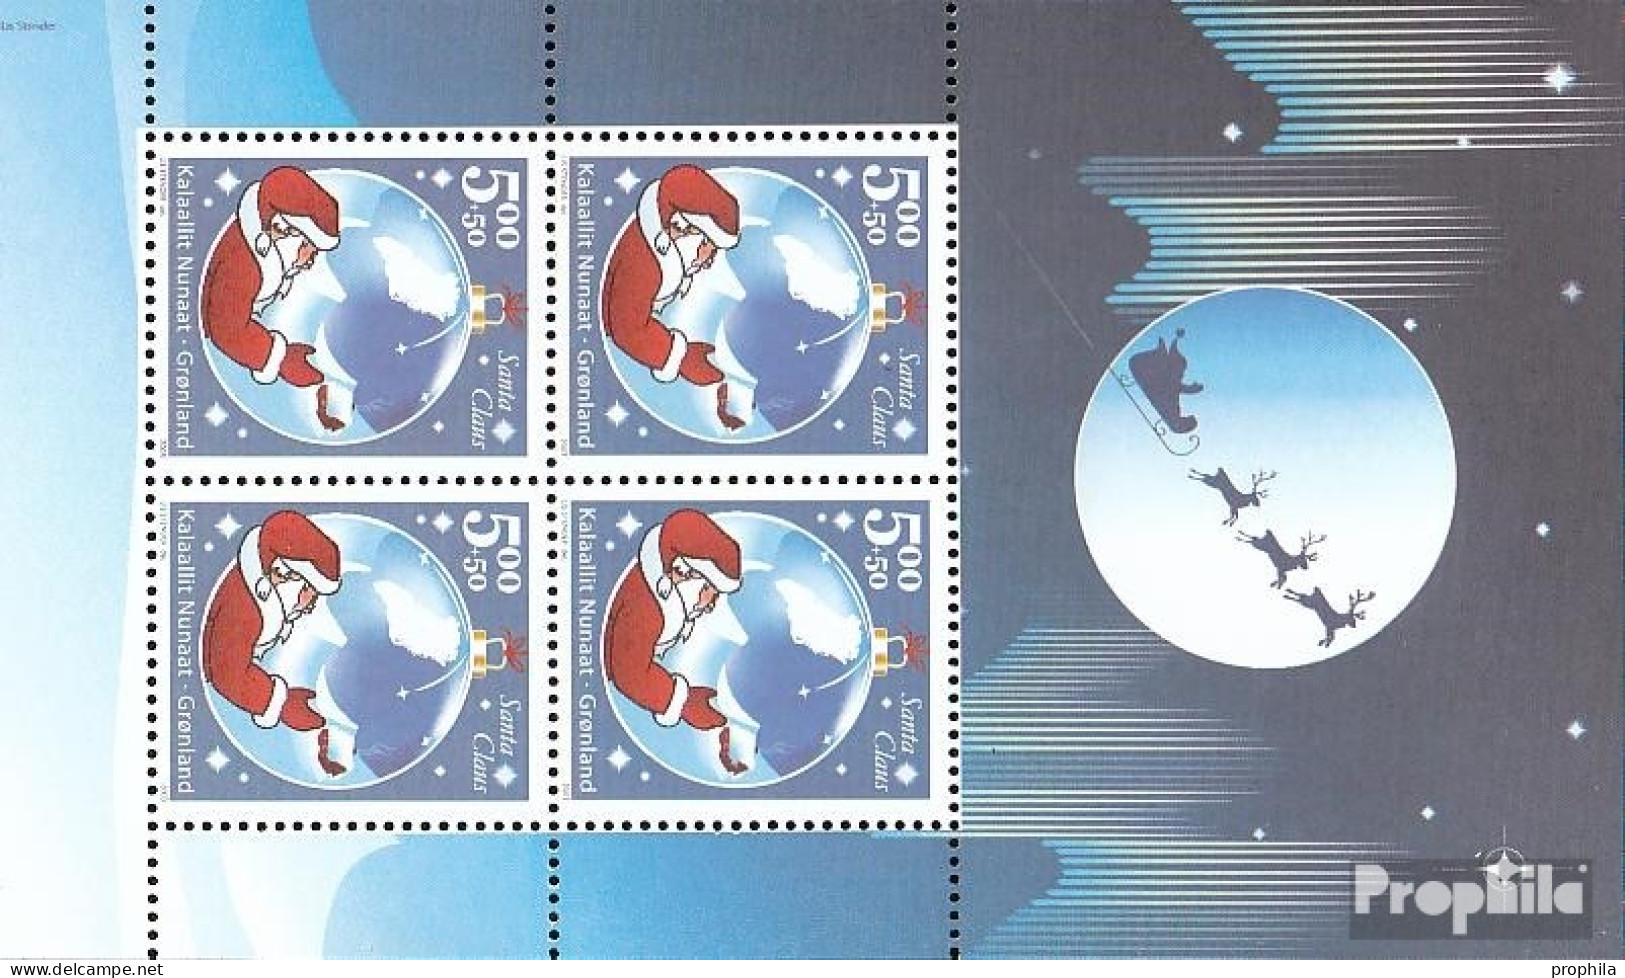 Dänemark - Grönland Block26 (kompl.Ausg.) Postfrisch 2003 Santa Claus Of Greenland - Blocs